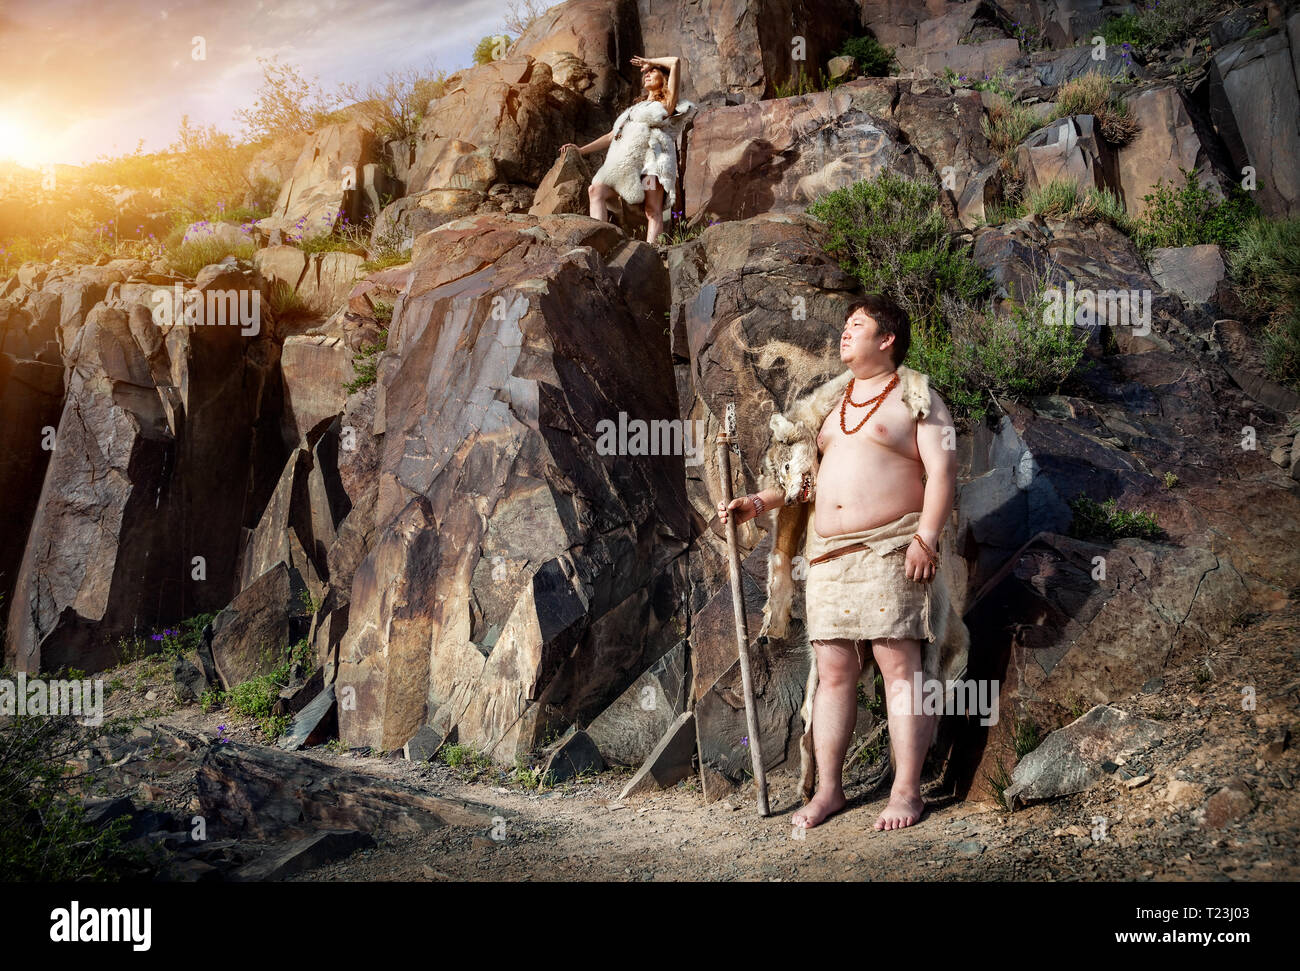 Primitivo persone vestite di pelle di animale vicino alla grotta antica disegno in montagna Foto Stock